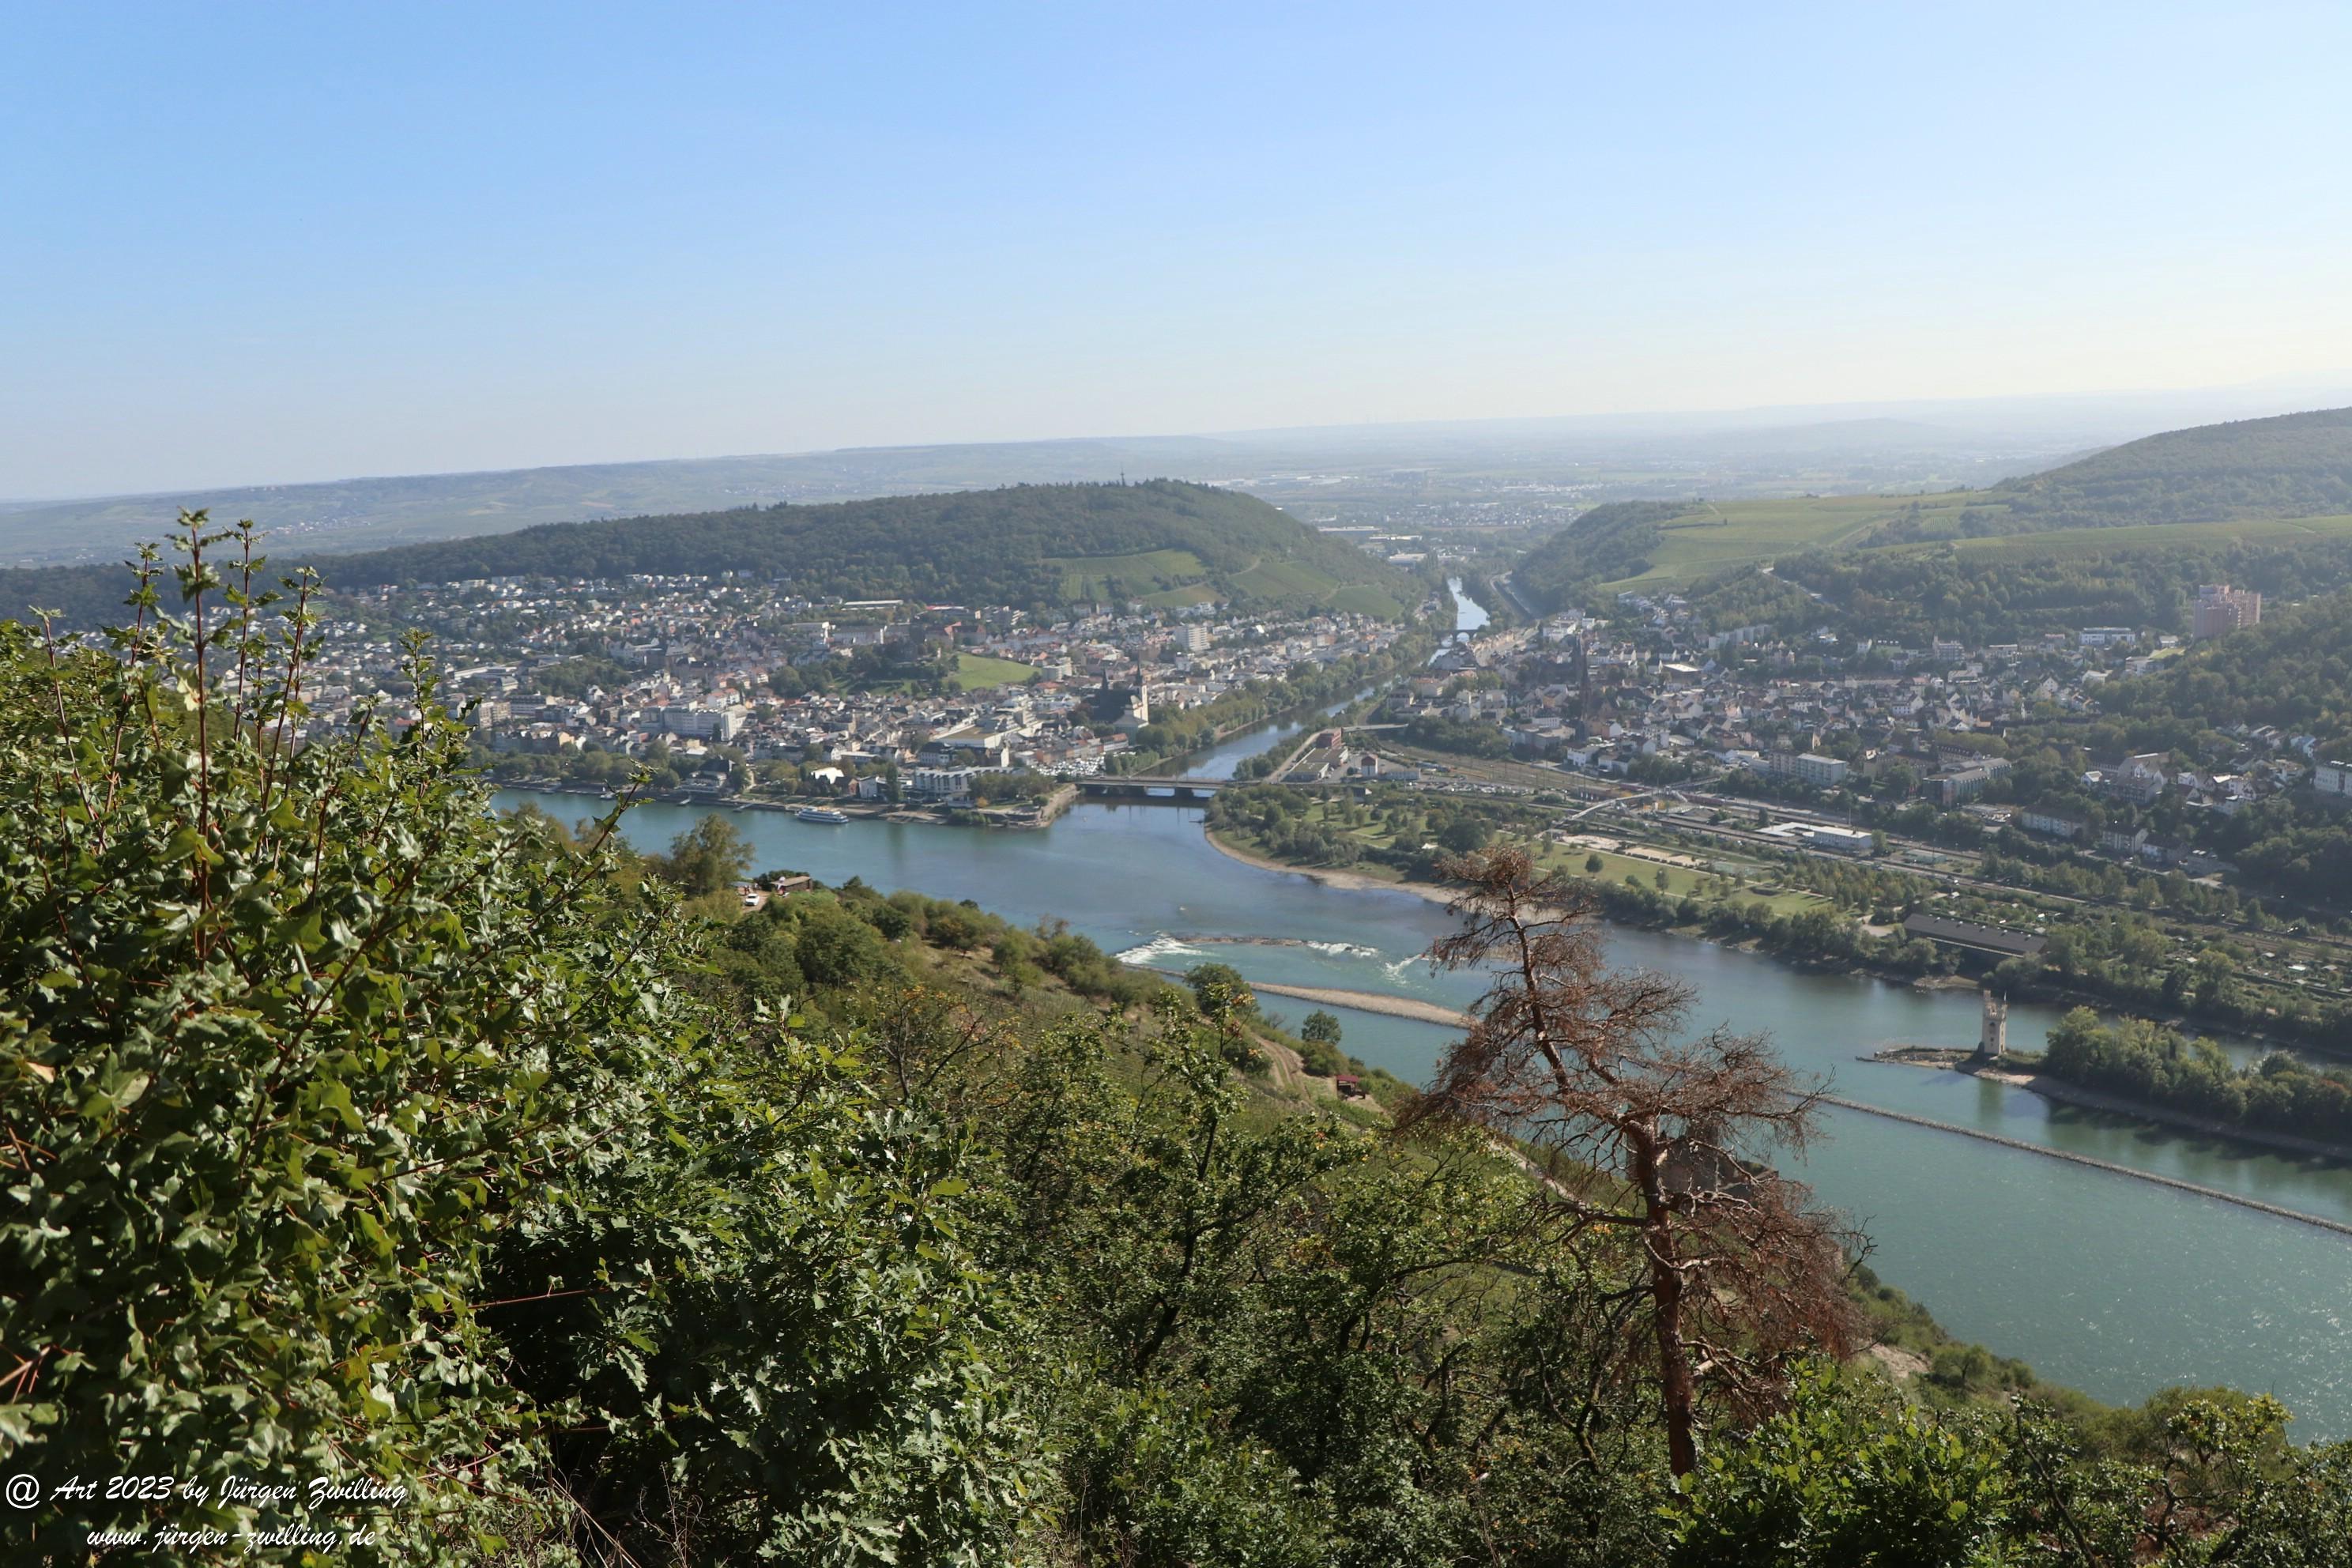  Große Rüdesheimer Runde am Rhein 11